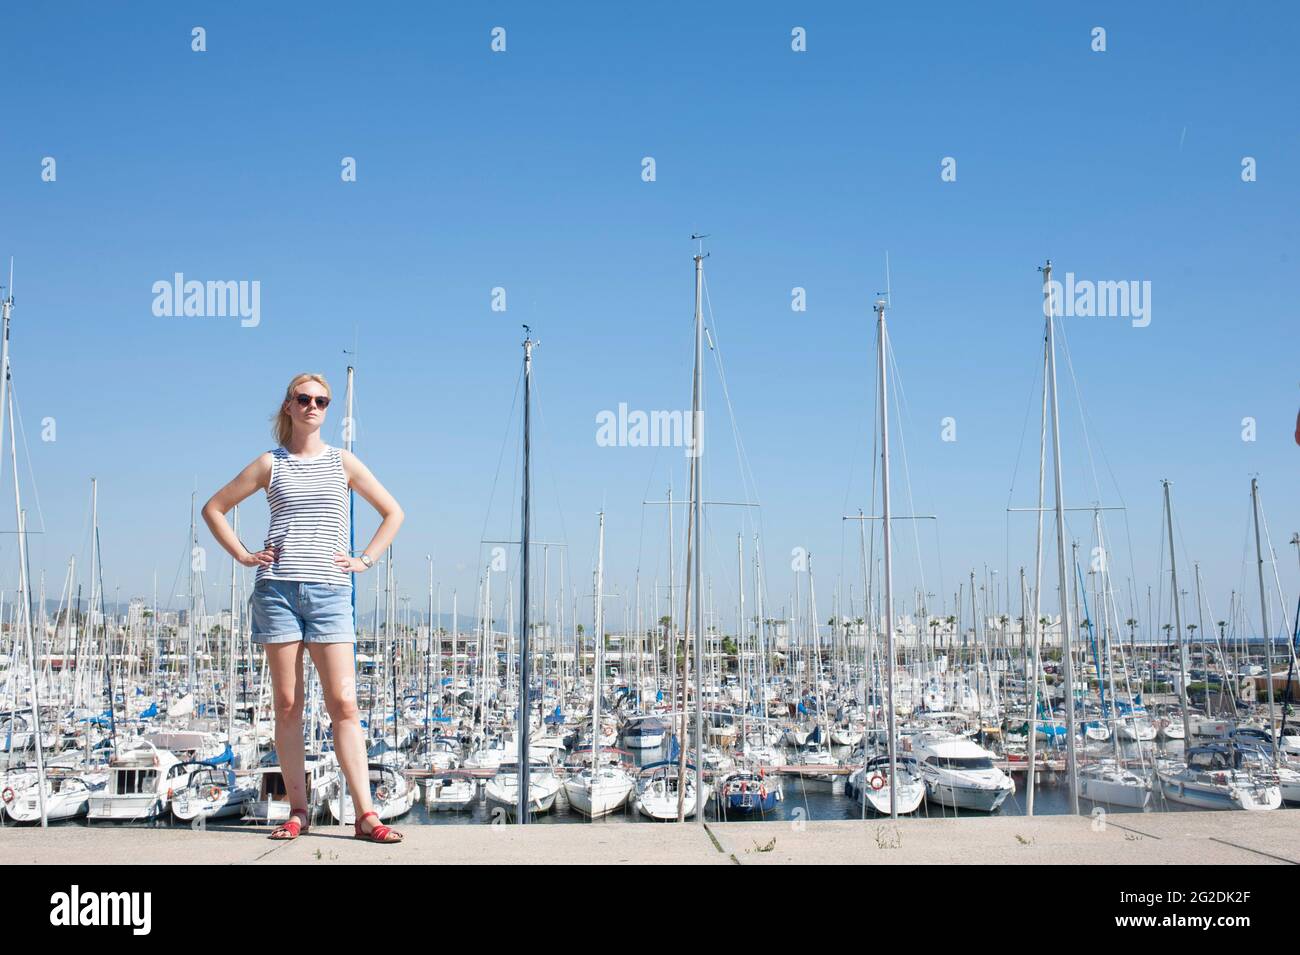 Une personne debout devant de nombreux mâts de nombreux yachts à voile dans une marina de Barcelone, Espagne Banque D'Images